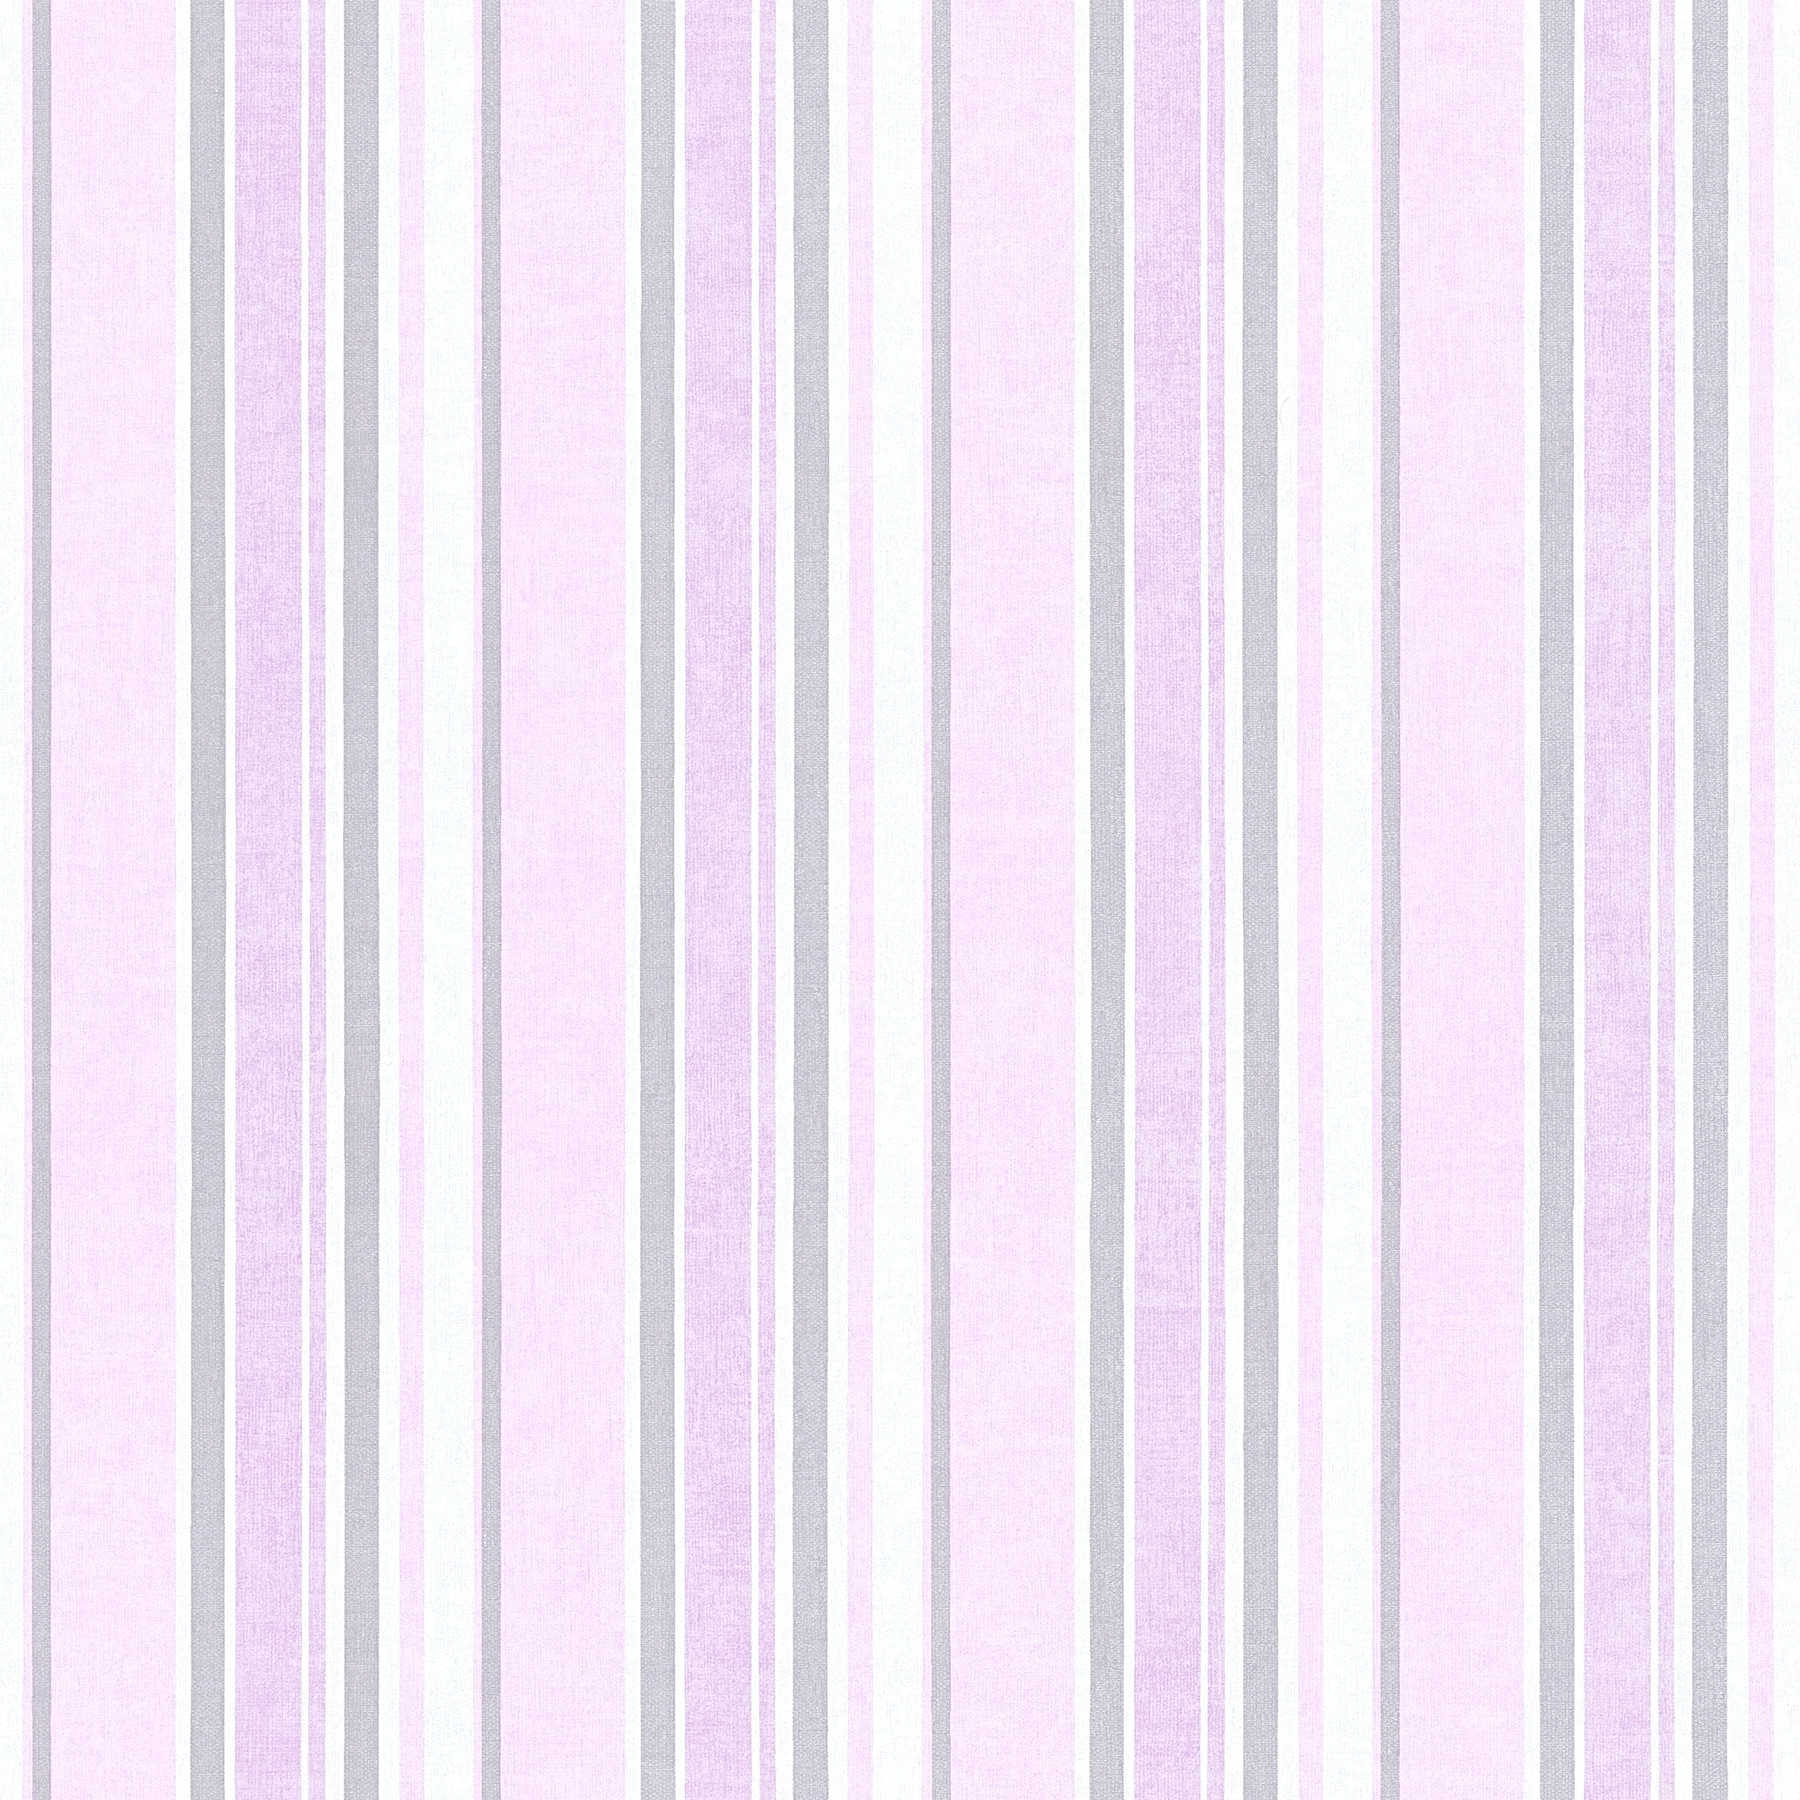 Nursery wallpaper purple stripes with metallic effect
